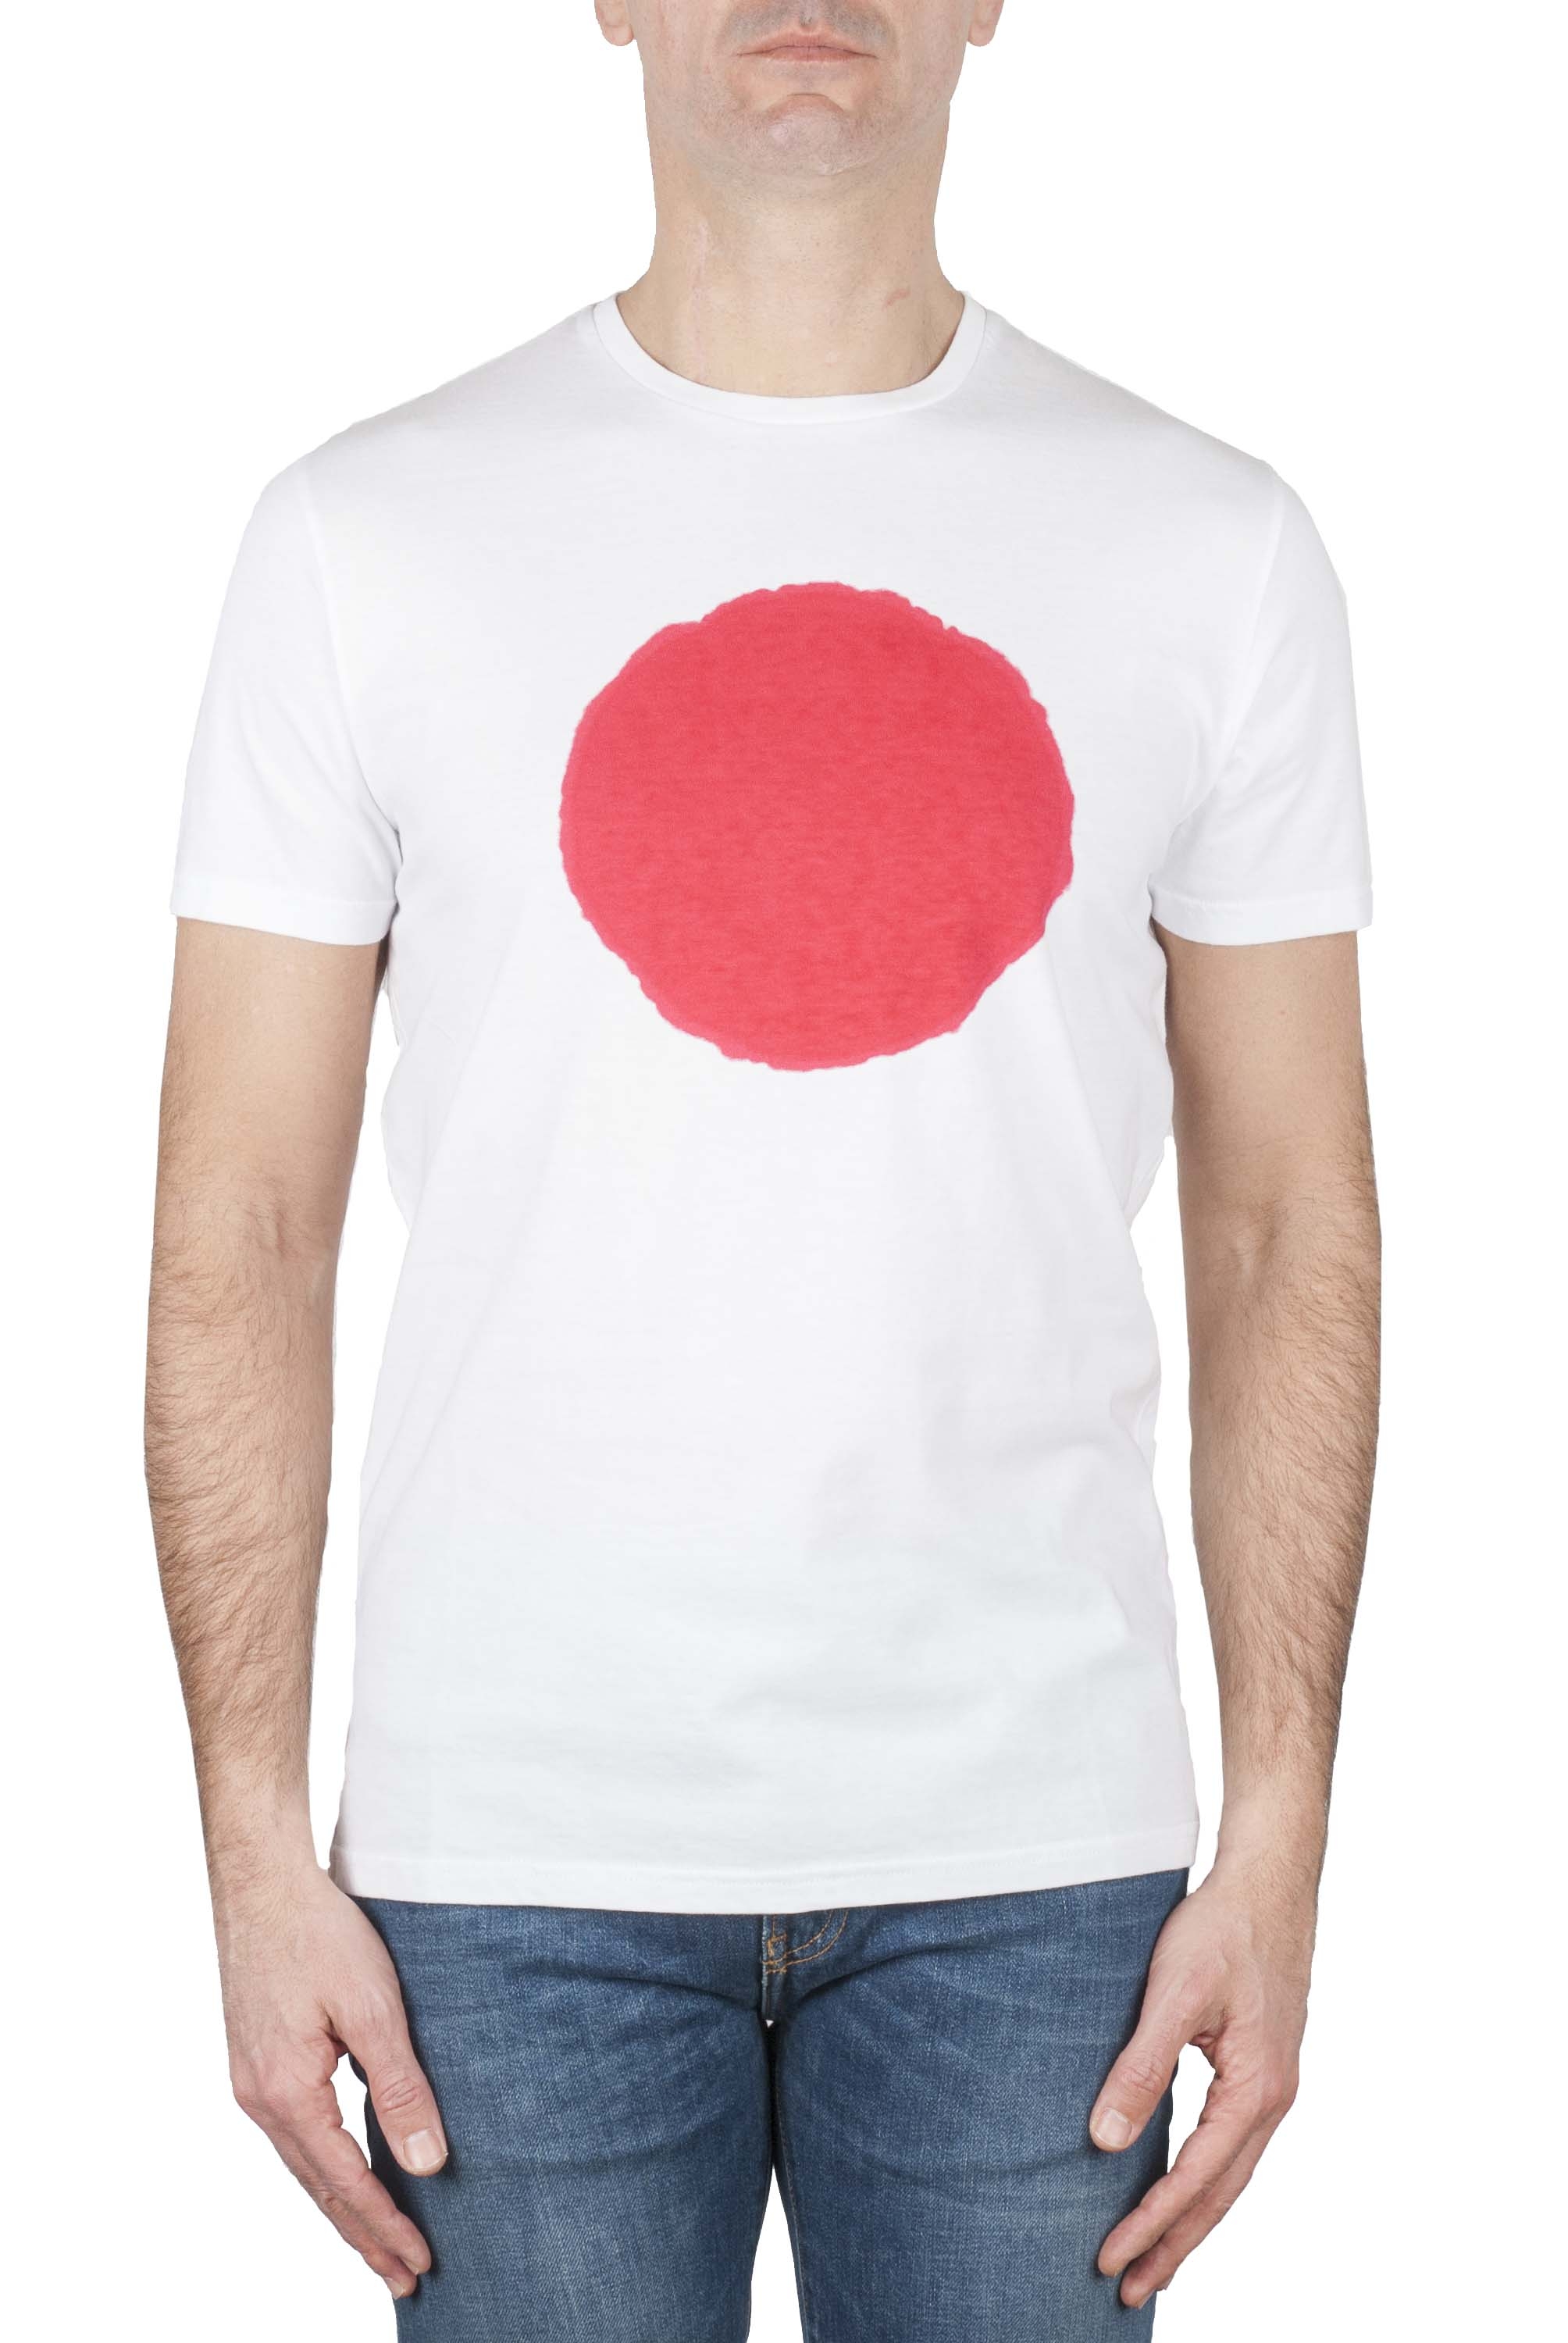 SBU 01170 Clásica camiseta de cuello redondo manga corta de algodón roja y blanca gráfica impresa 01